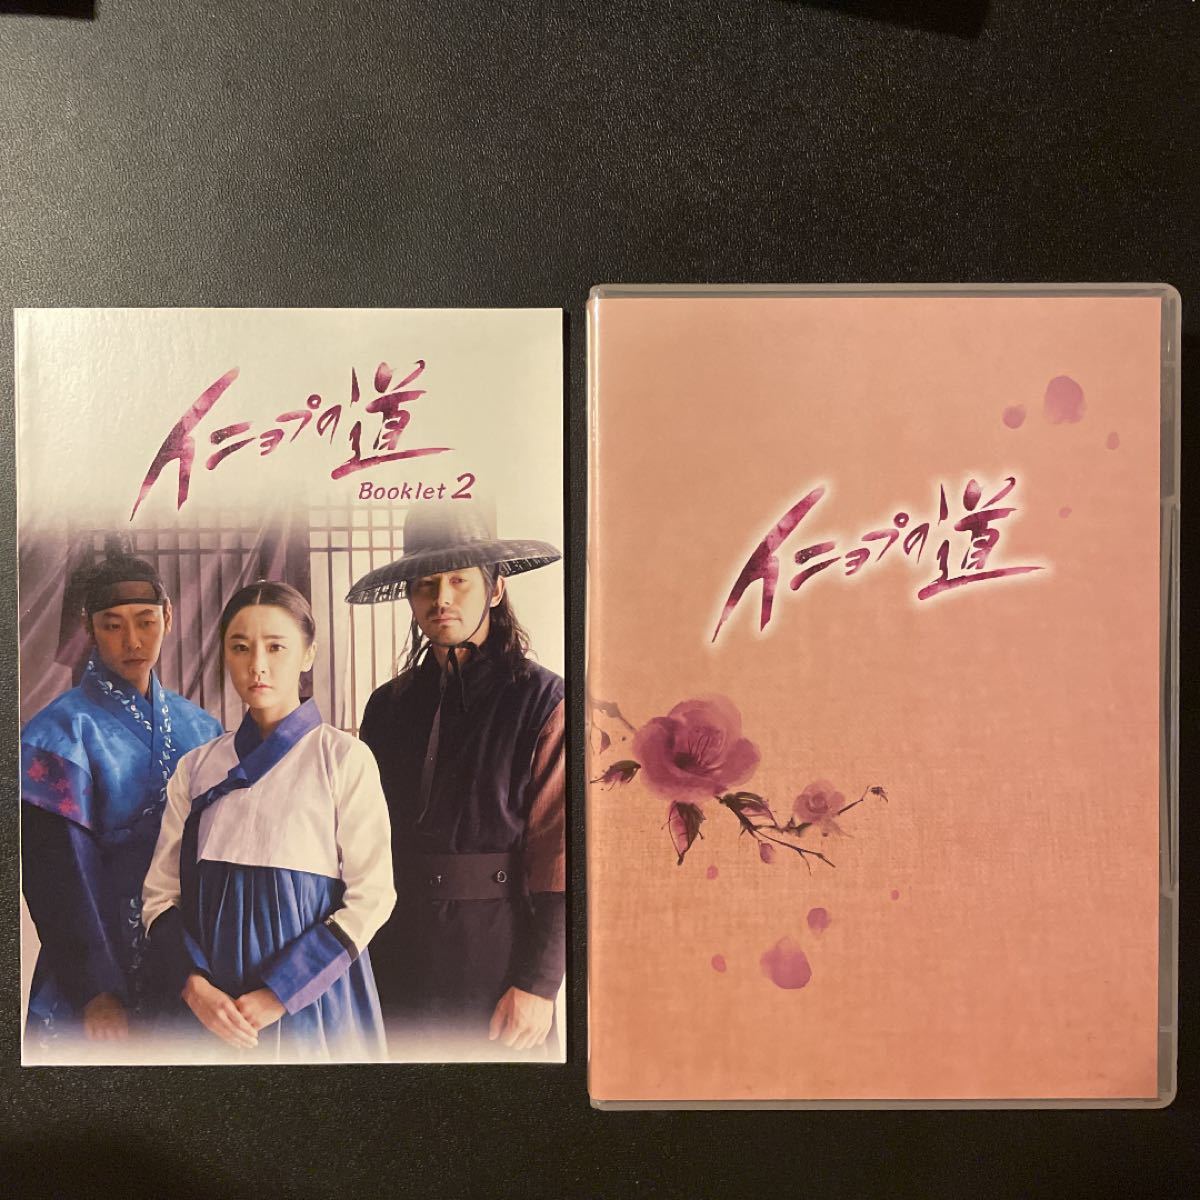 イニョプの道 DVD-BOX2〈6枚組〉★セット割歓迎★ 韓国ドラマ